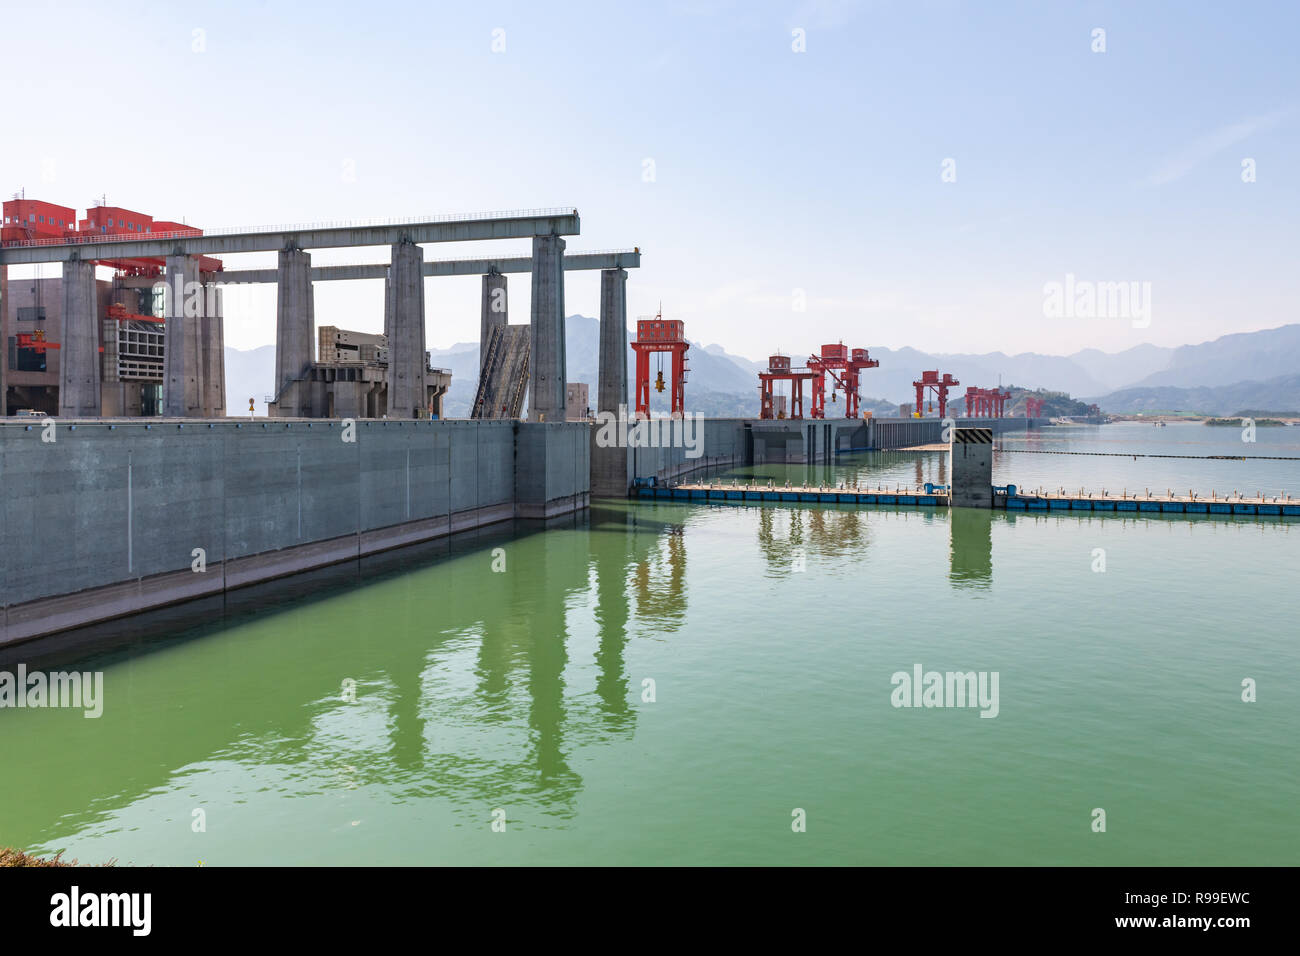 Drei-schluchten-Damm - China - Blick auf Schiff heben Krane und Staumauer Stockfoto